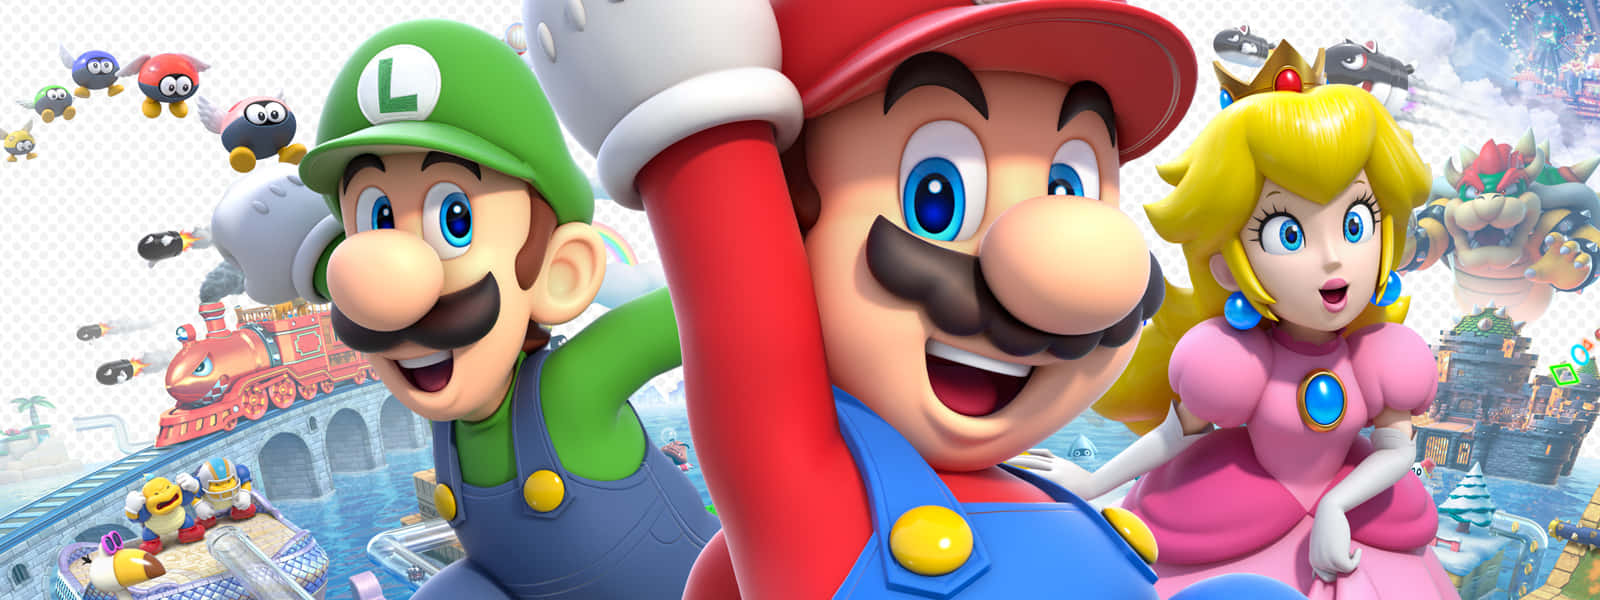 Super Mario Smiling Happily 3d Wallpaper